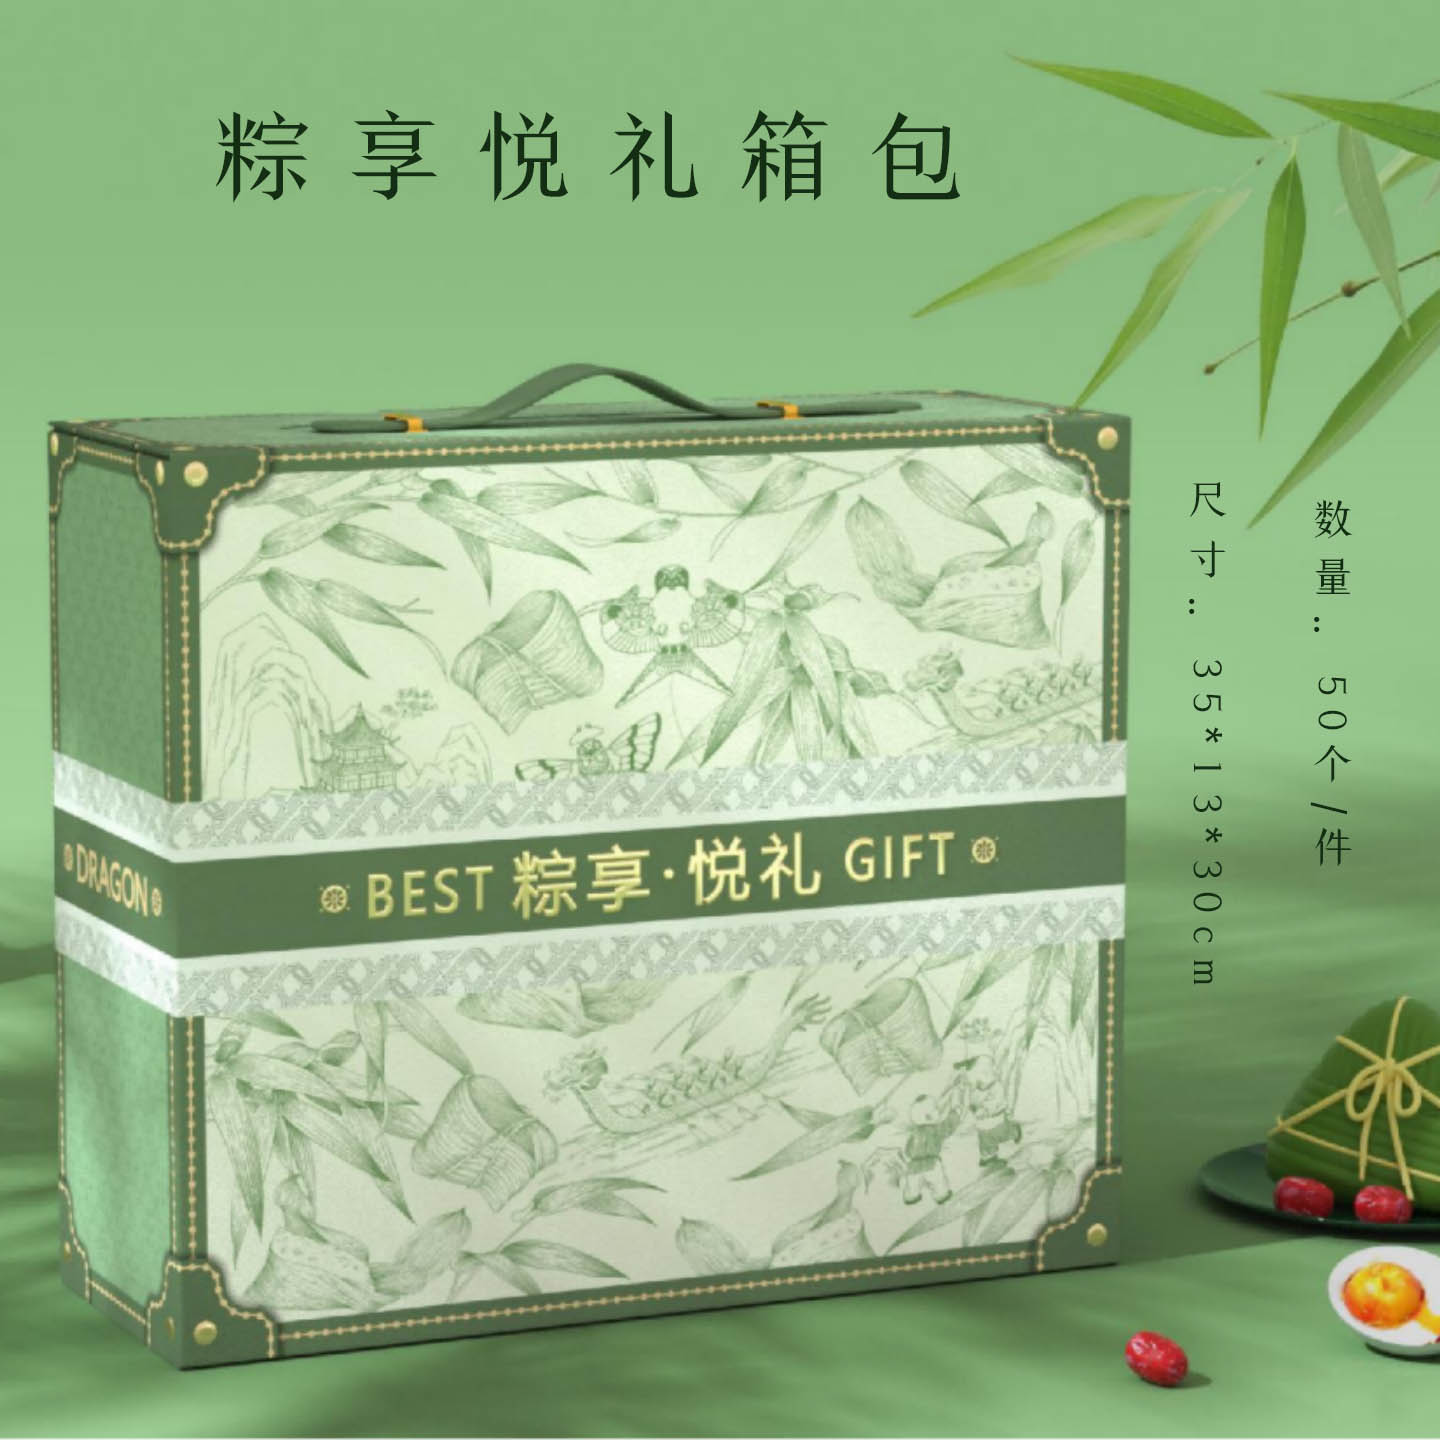 24新款粽子礼盒包装盒端午节高端空盒定制logo端午绿礼品包装定做